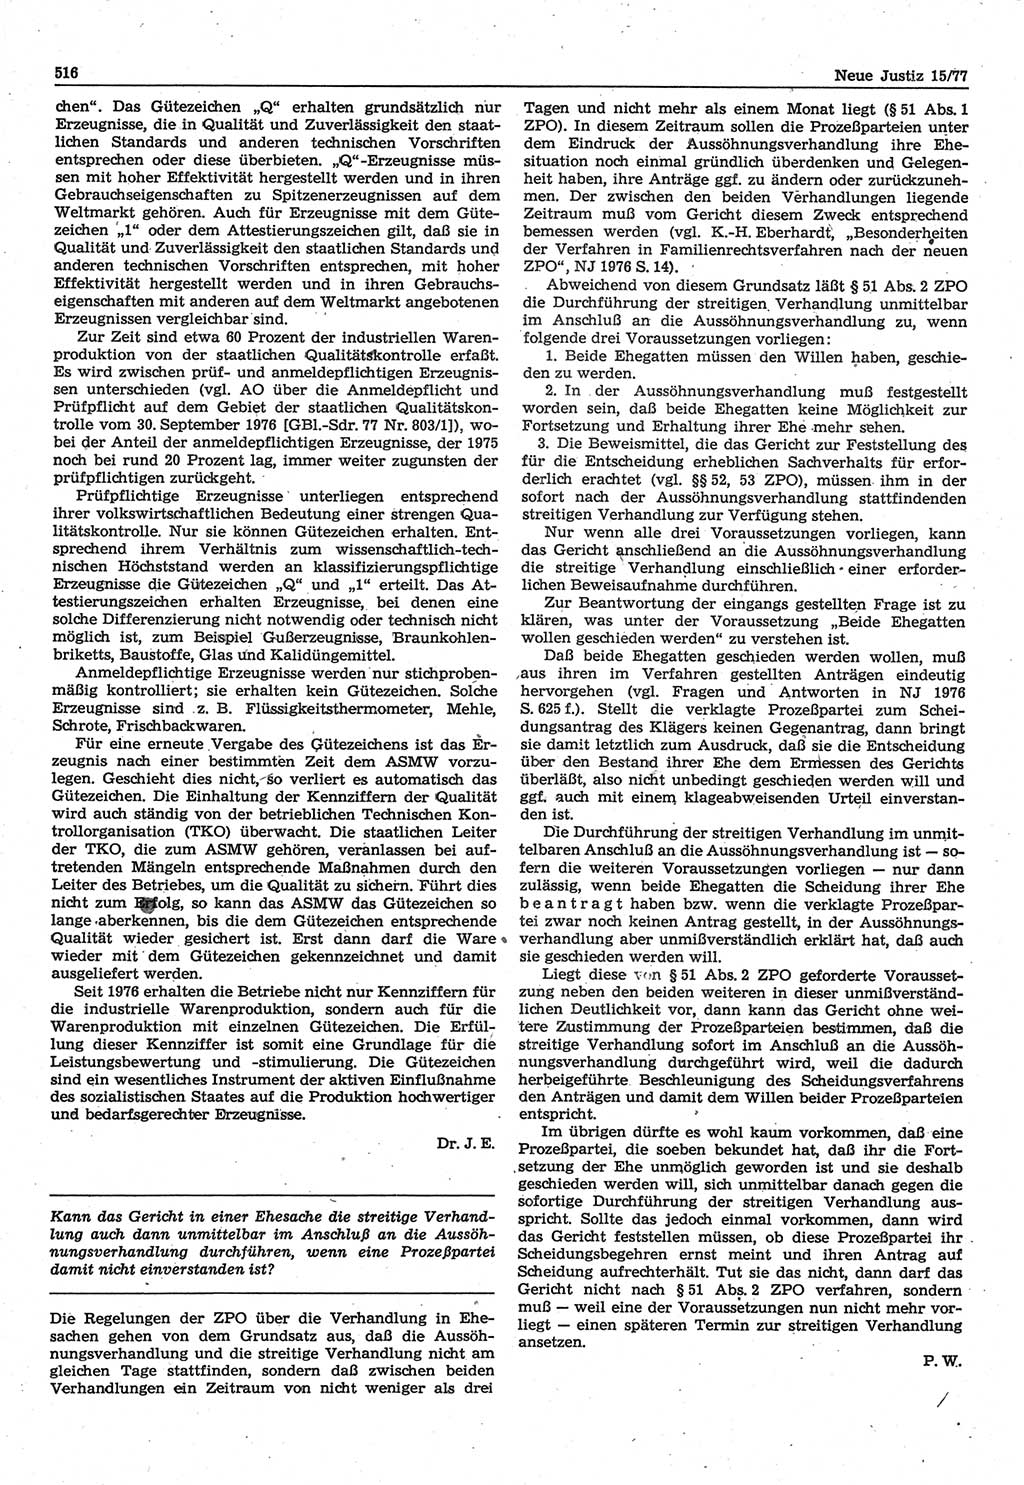 Neue Justiz (NJ), Zeitschrift für Recht und Rechtswissenschaft-Zeitschrift, sozialistisches Recht und Gesetzlichkeit, 31. Jahrgang 1977, Seite 516 (NJ DDR 1977, S. 516)